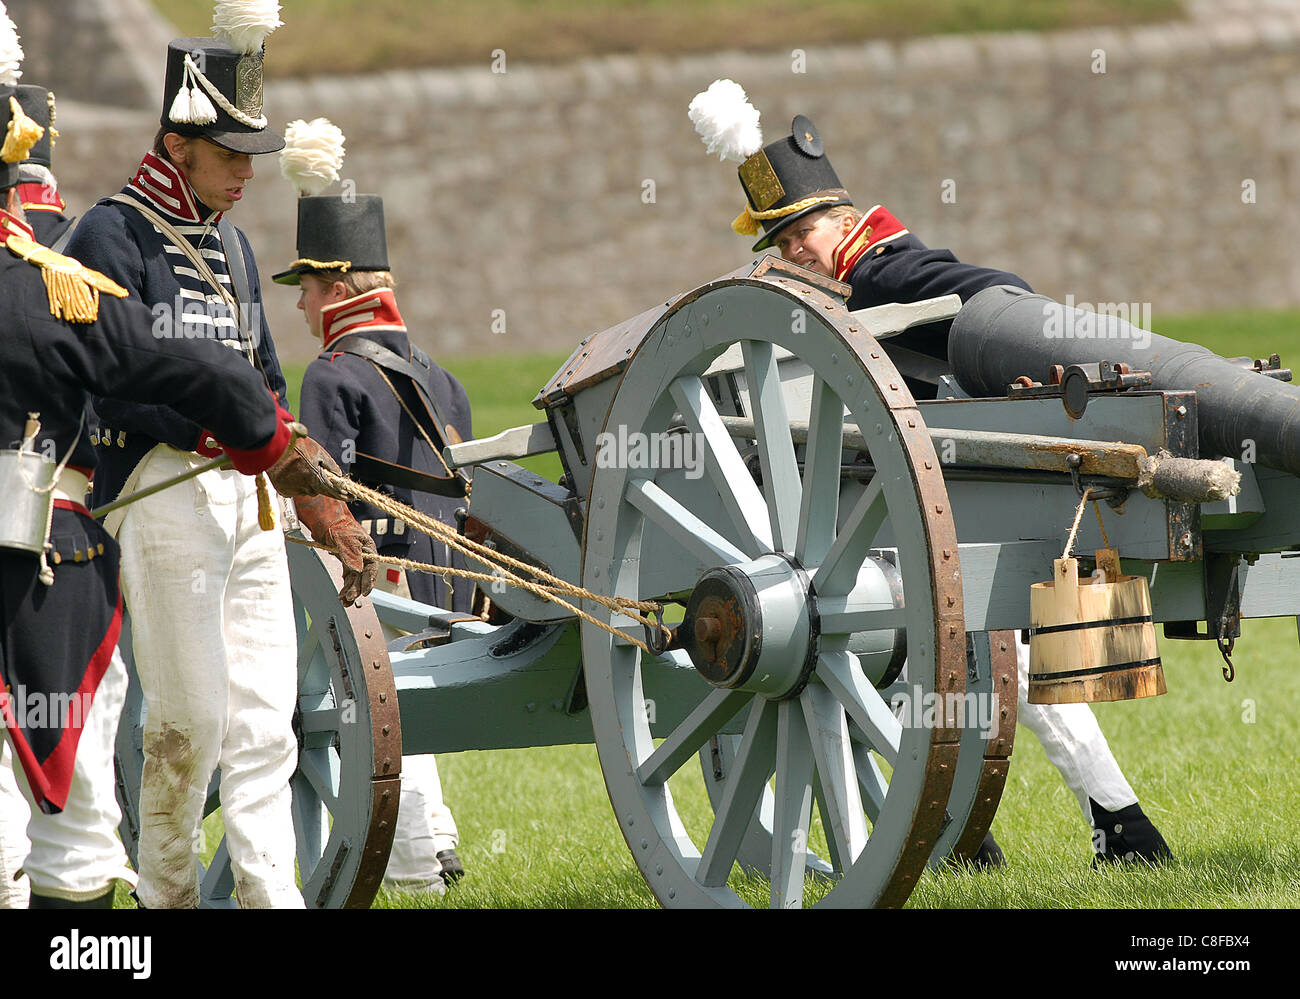 Photo de la siège du fort Érié Guerre de 1812 reconstitution de la bataille, un équipage d'artillerie se déplace leur cannon sur le terrain Banque D'Images